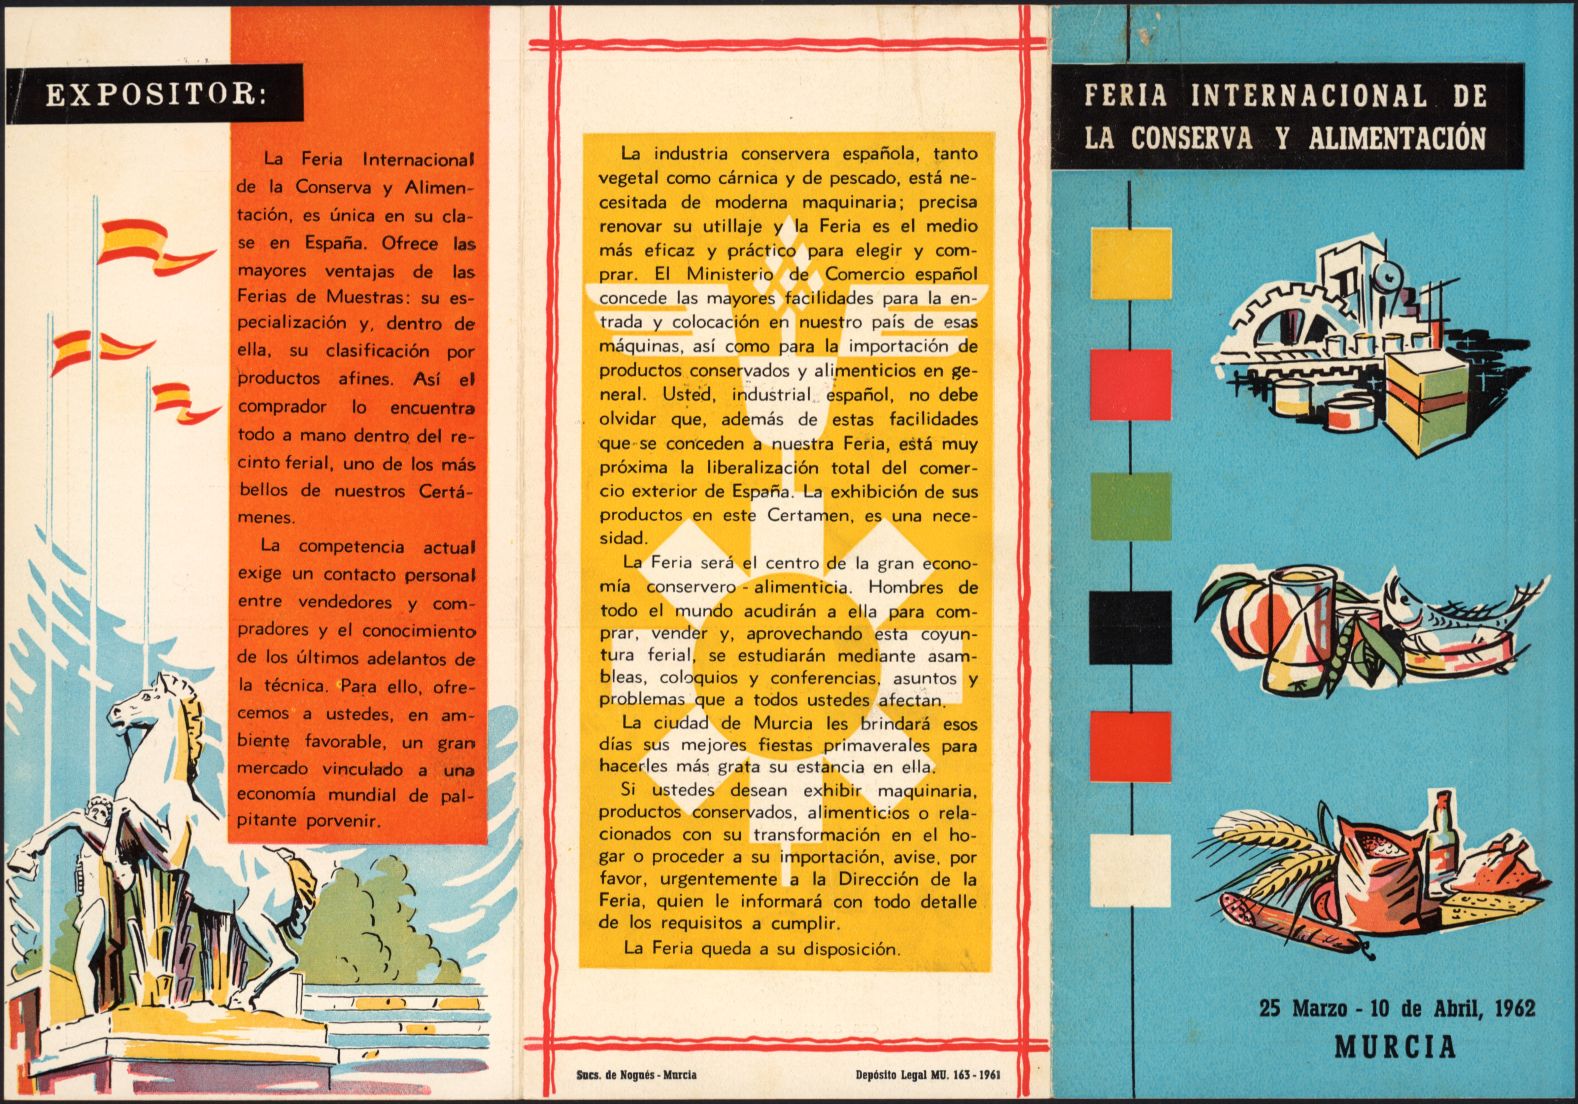 Folletos, pases, invitaciones y banderola de la I Feria Internacional de la Conserva y Alimentación. Año 1962.